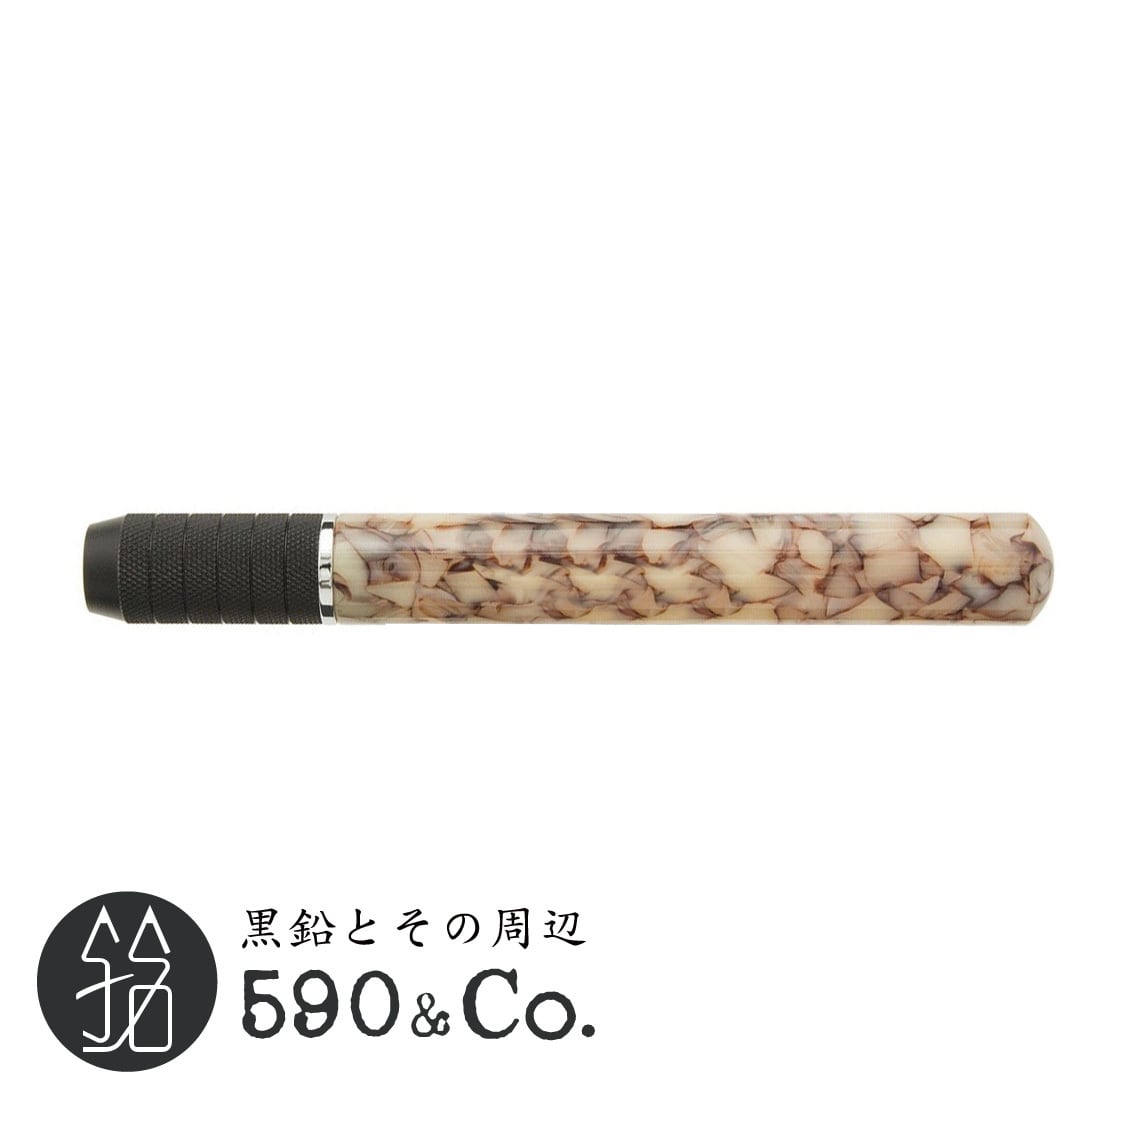 【Pen Star/ペンスター】アクリルエクステンダー (アイボリーサンド) 590Co.